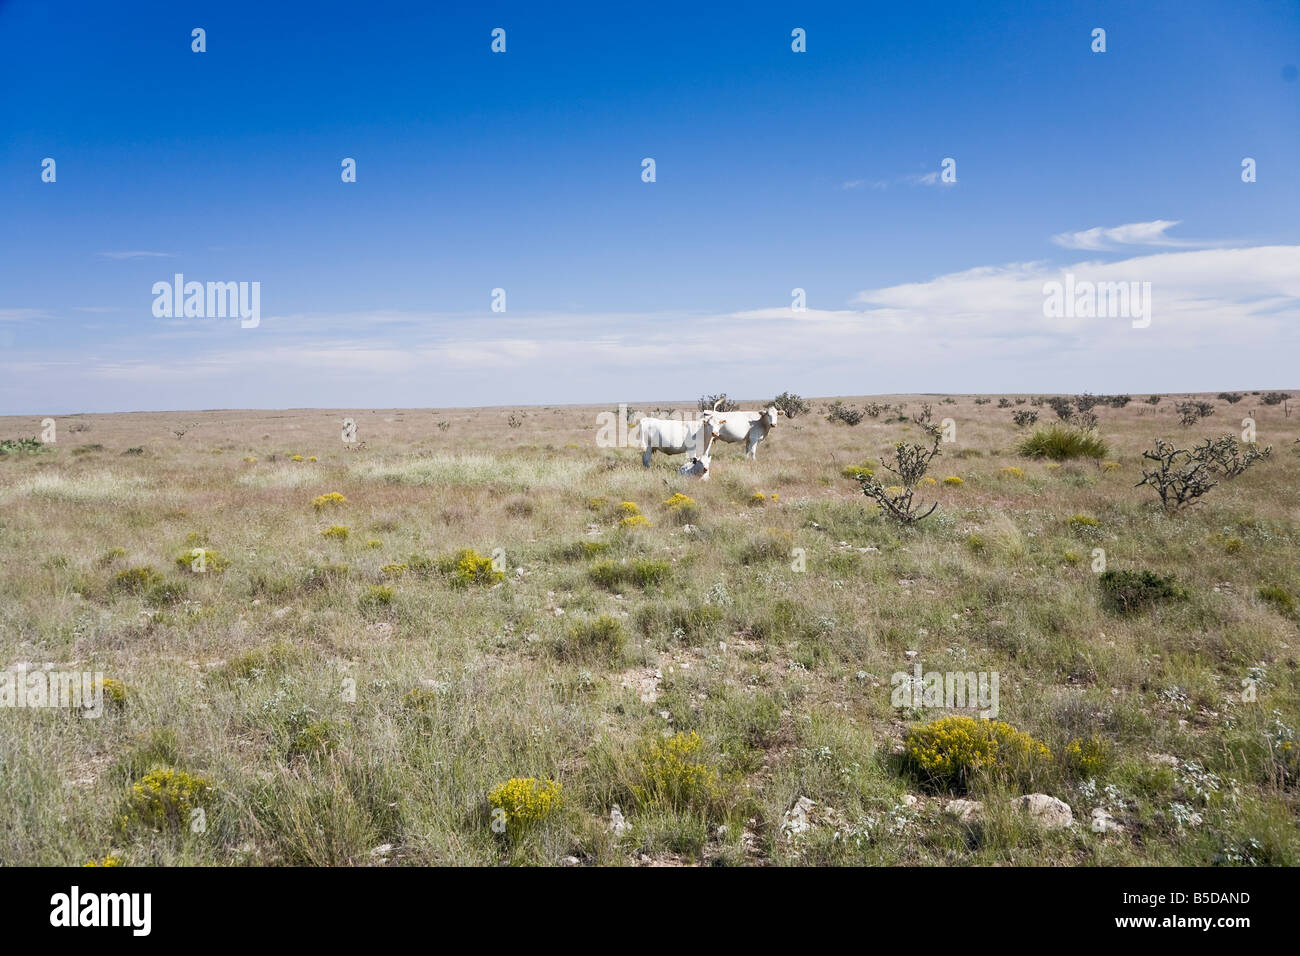 White cows on prairie in Arizona, USA Stock Photo